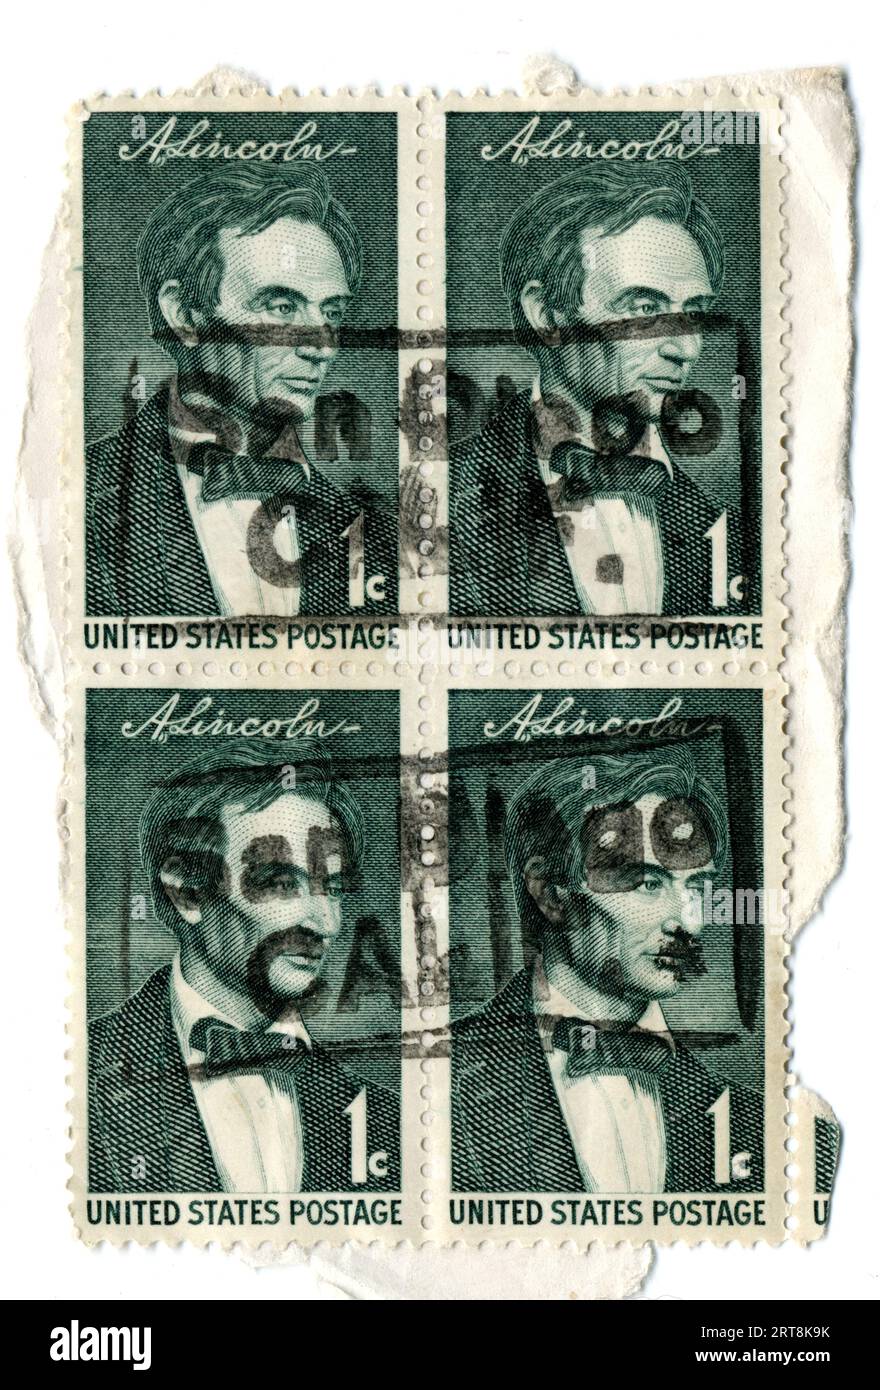 Un blocco di francobolli da un centesimo cancellati in onore dell'ex presidente degli Stati Uniti Abe Lincoln emessi nel 1959. Foto Stock